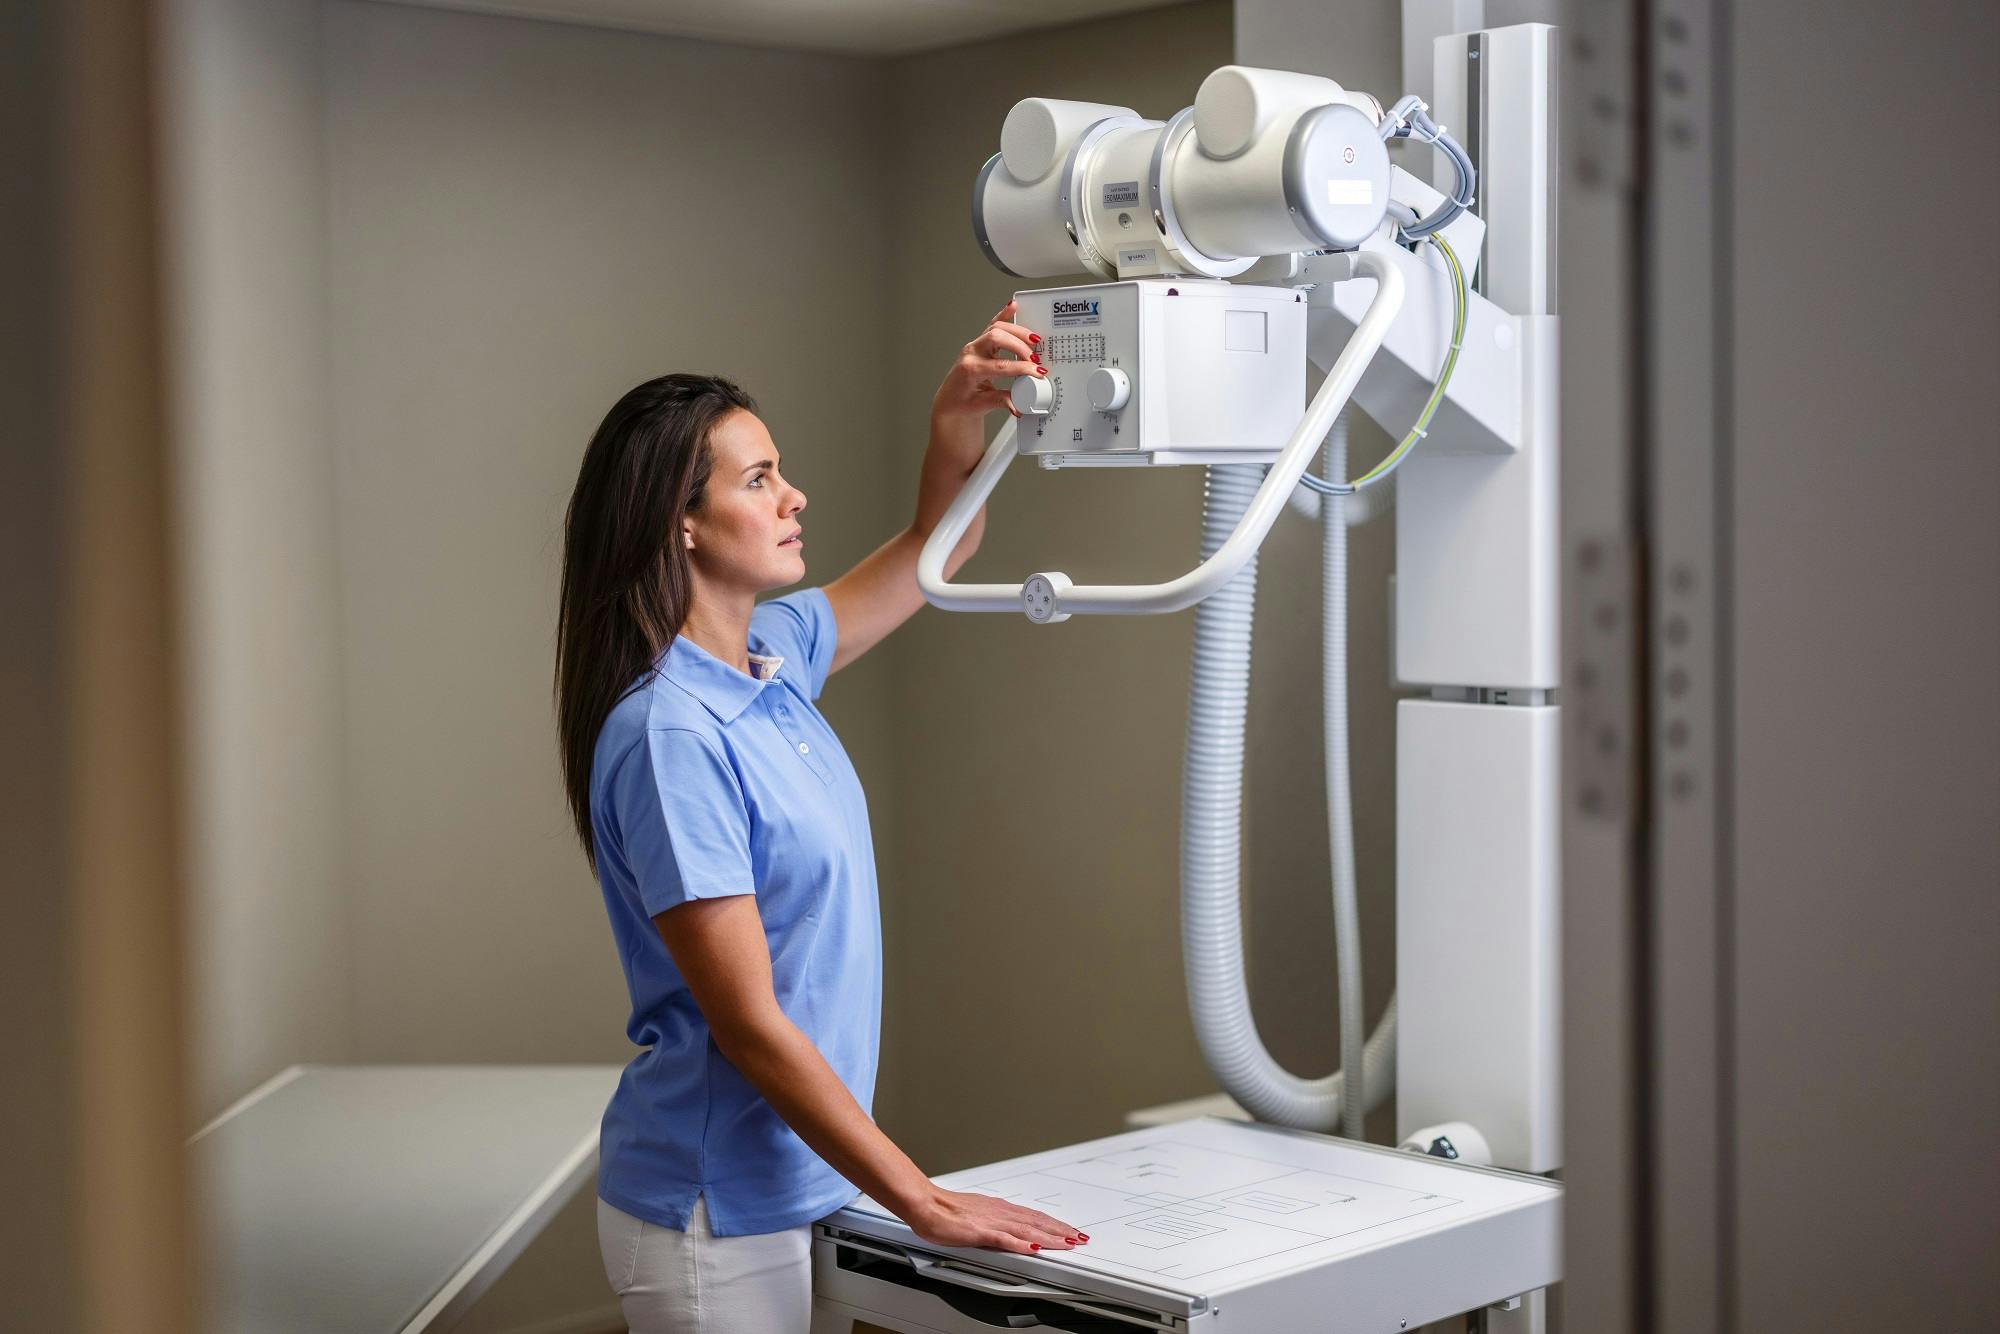 Frau bedient Röntgengerät in medizinischer Einrichtung.